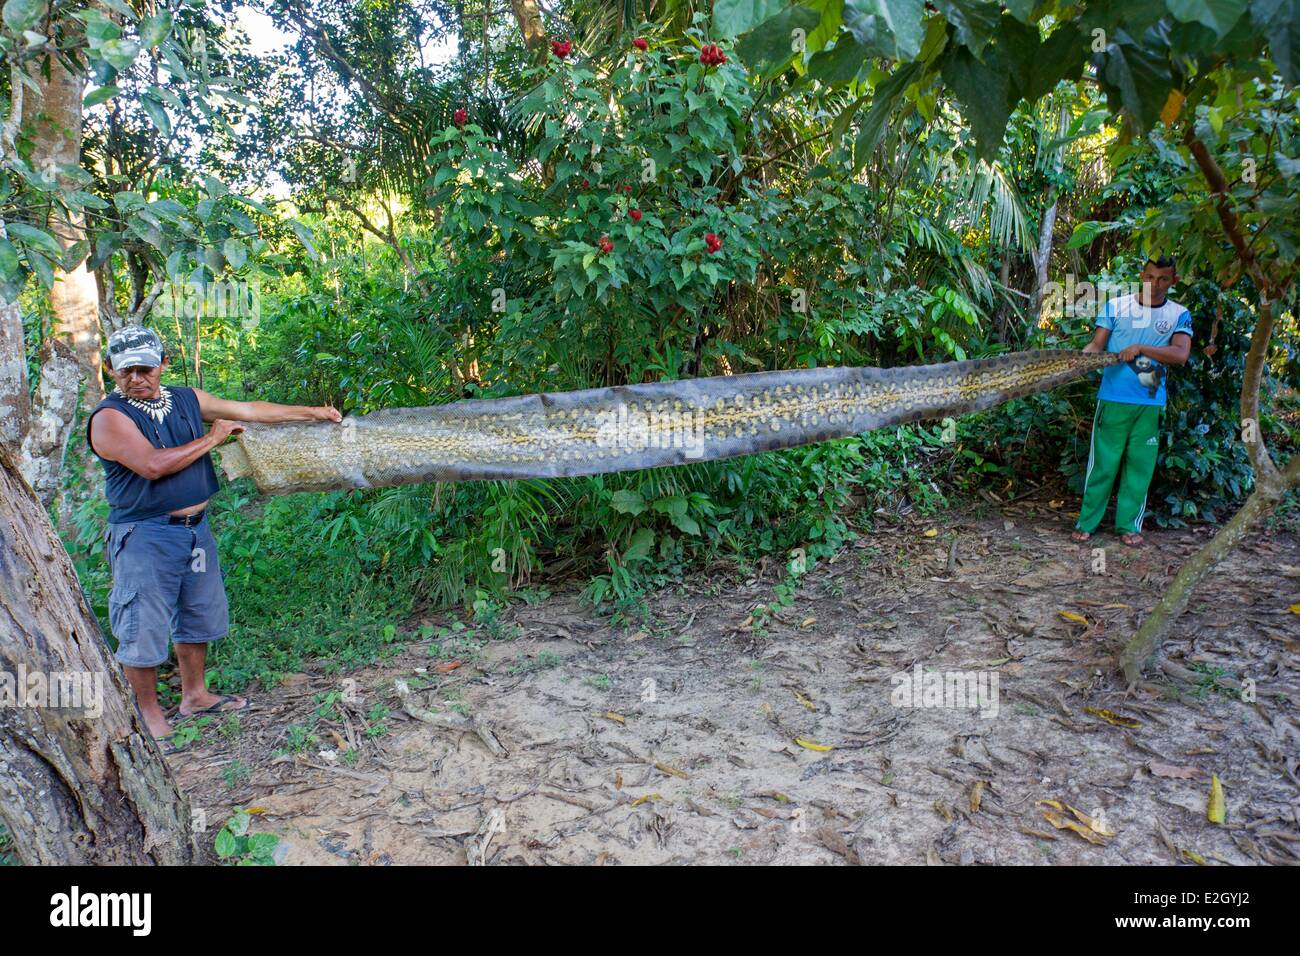 L'état d'Amazonas au Brésil du bassin du fleuve Amazone Manaus peau d'anaconda vert une attente par deux hommes Banque D'Images